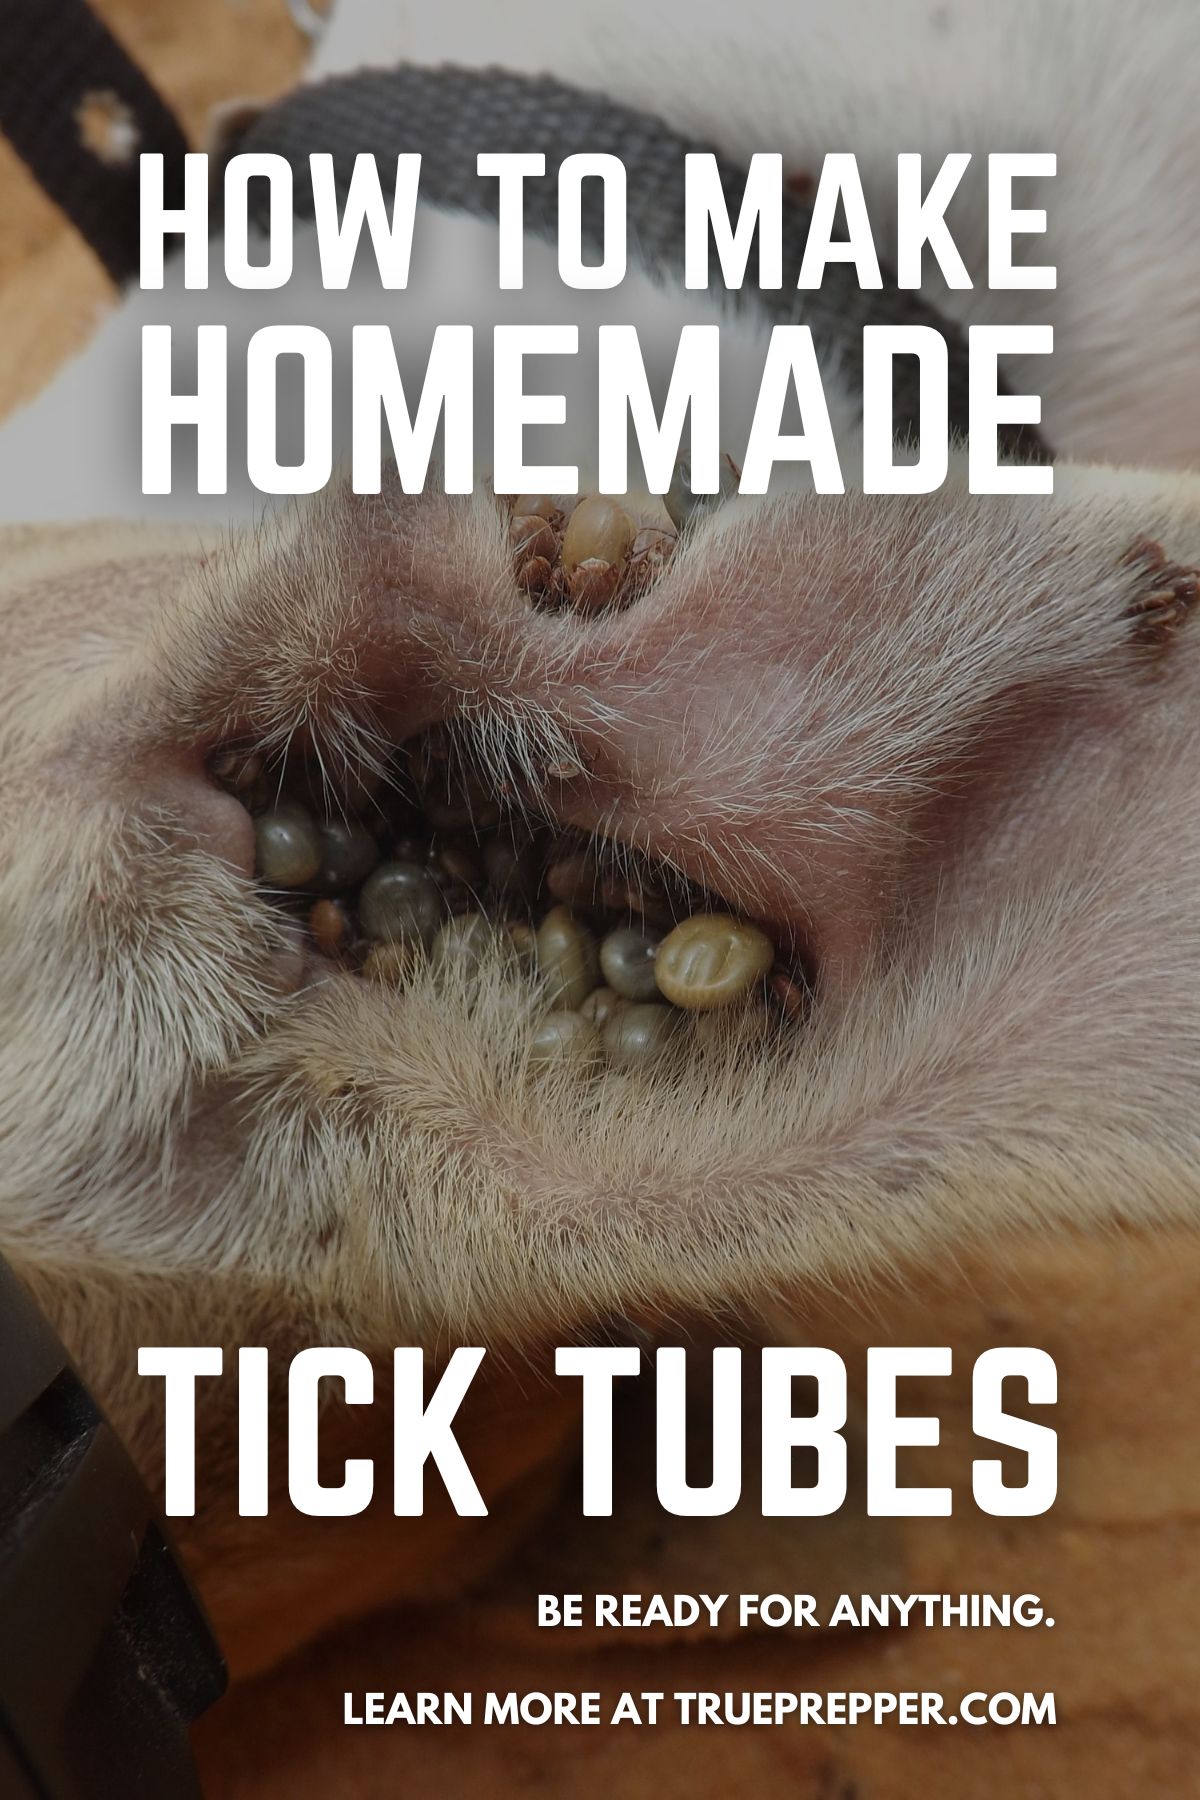 How to Make Homemade Tick Tubes